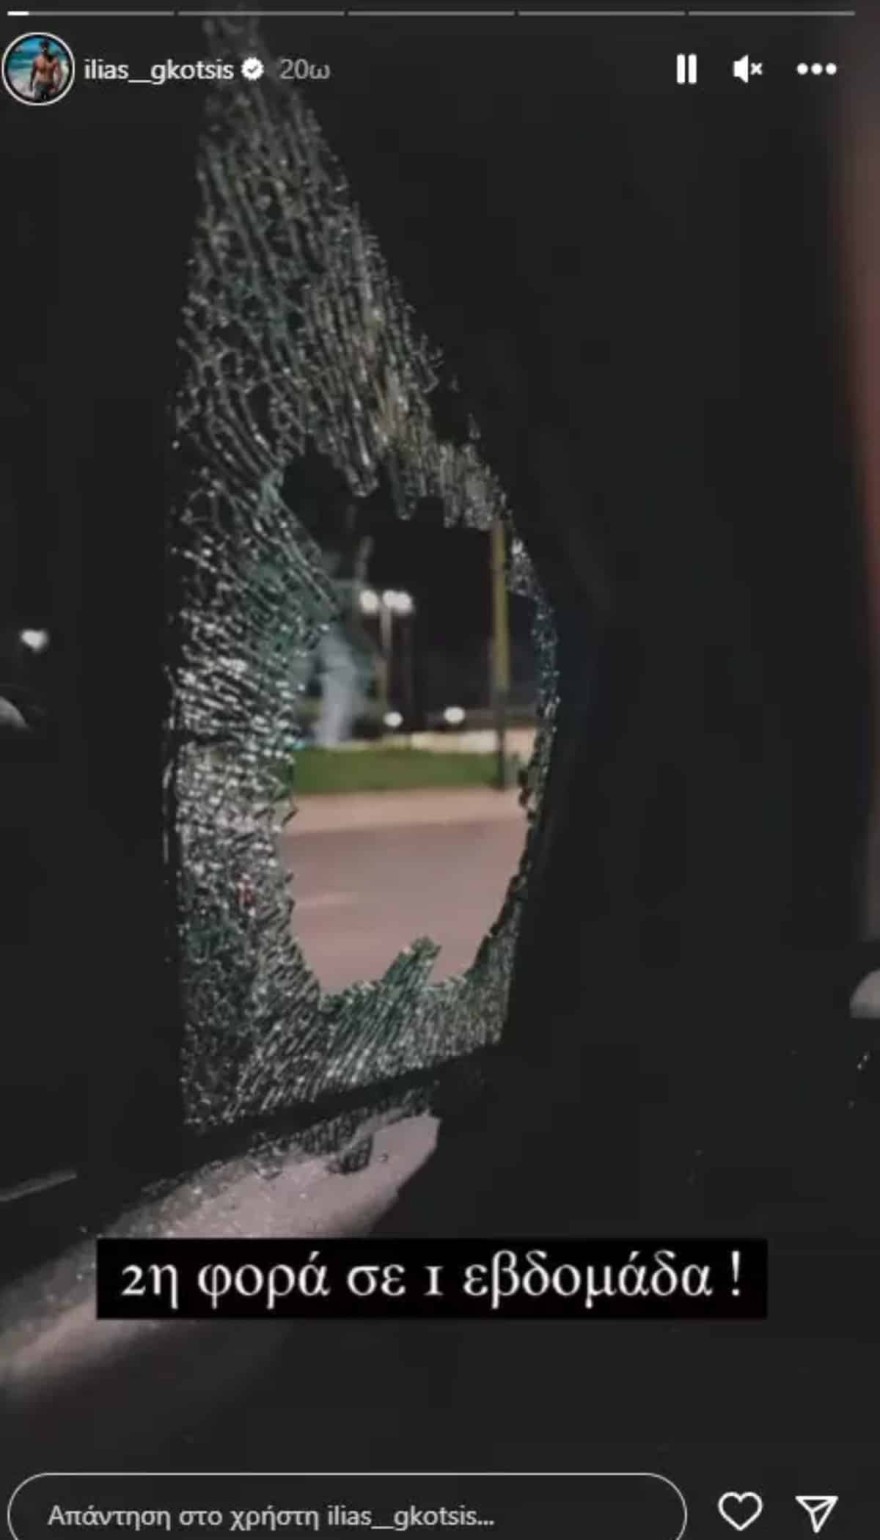 Έσπασαν το αυτοκίνητo του Ηλία Γκότση φωτογραφία